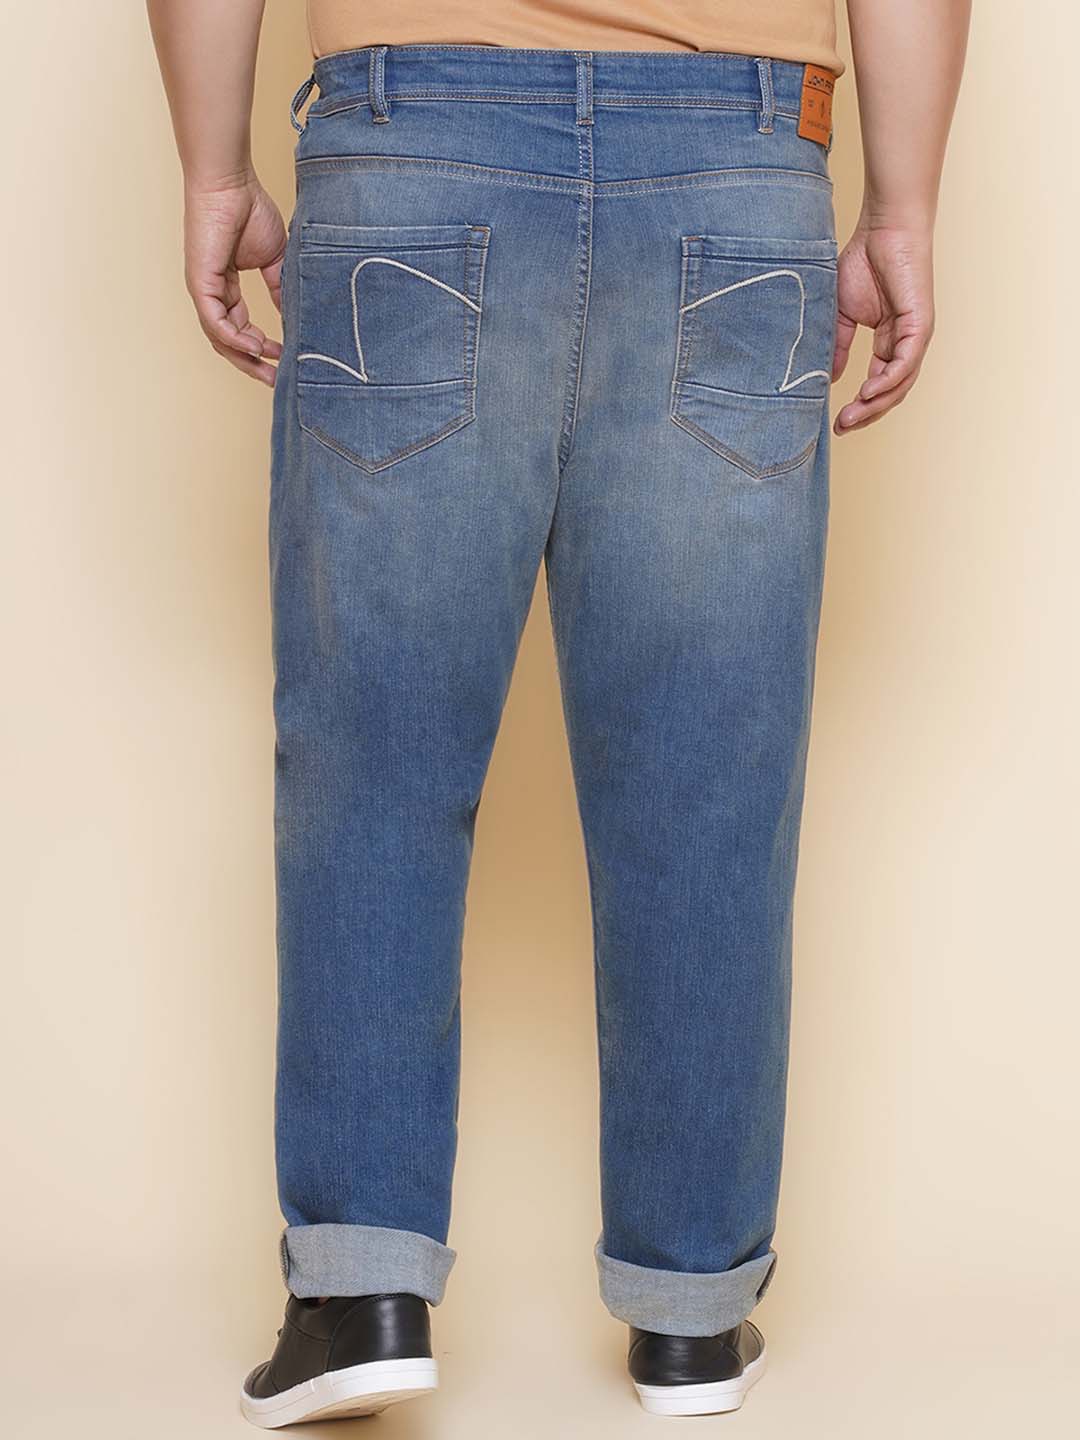 bottomwear/jeans/EJPJ25137/ejpj25137-5.jpg